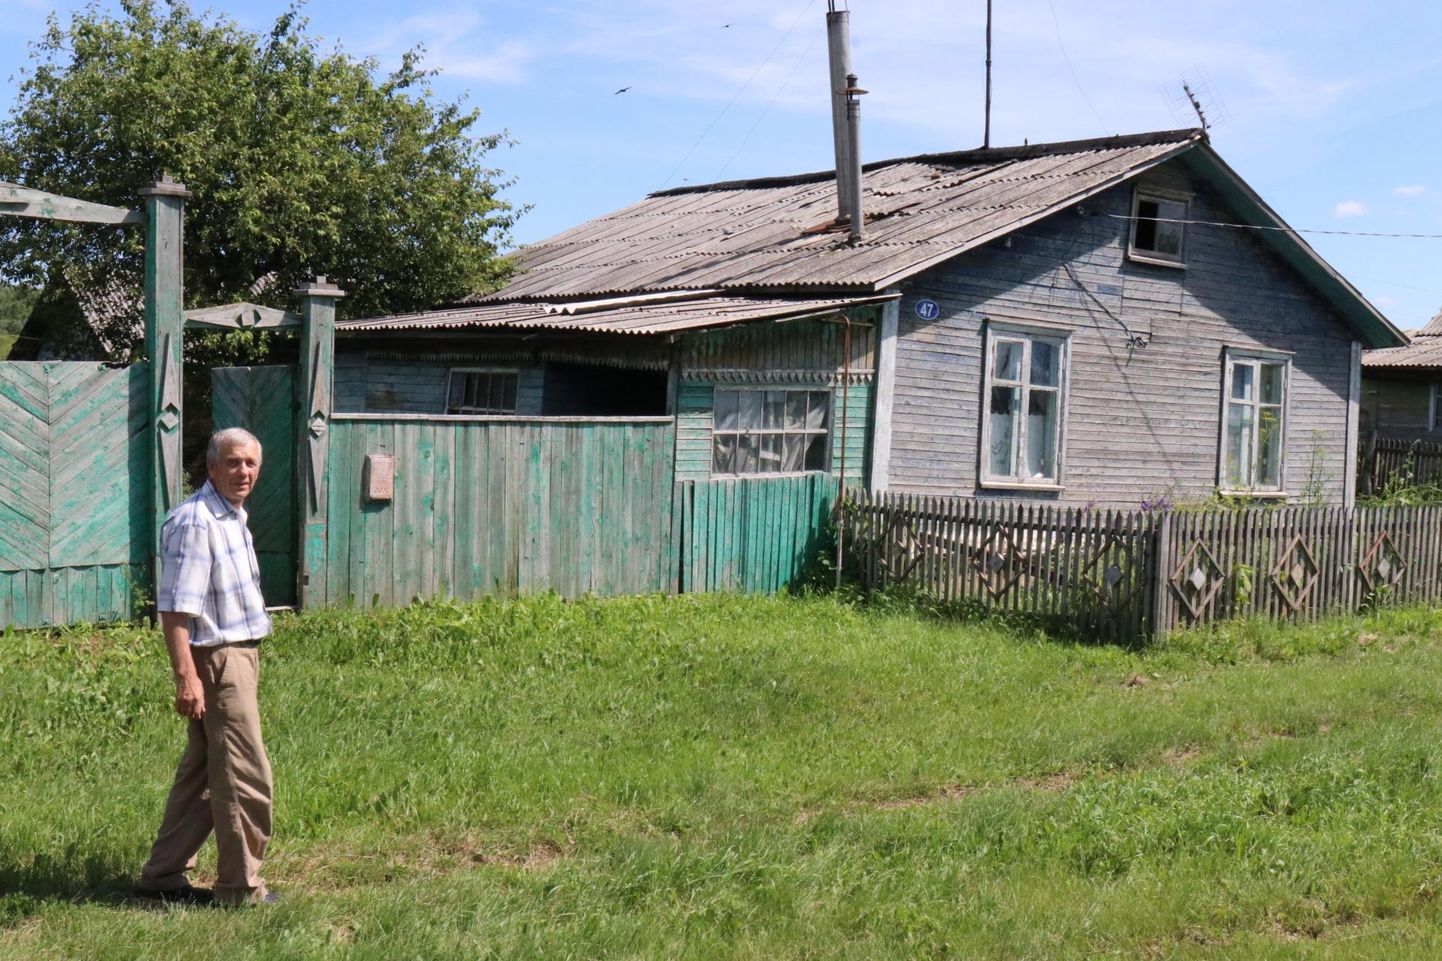 Juhan (Ivan) Ansip vanemate maja ees Orlovkas, kus ta suvitamas käib. Vanematest on siiani alles jäänud marjaaed.